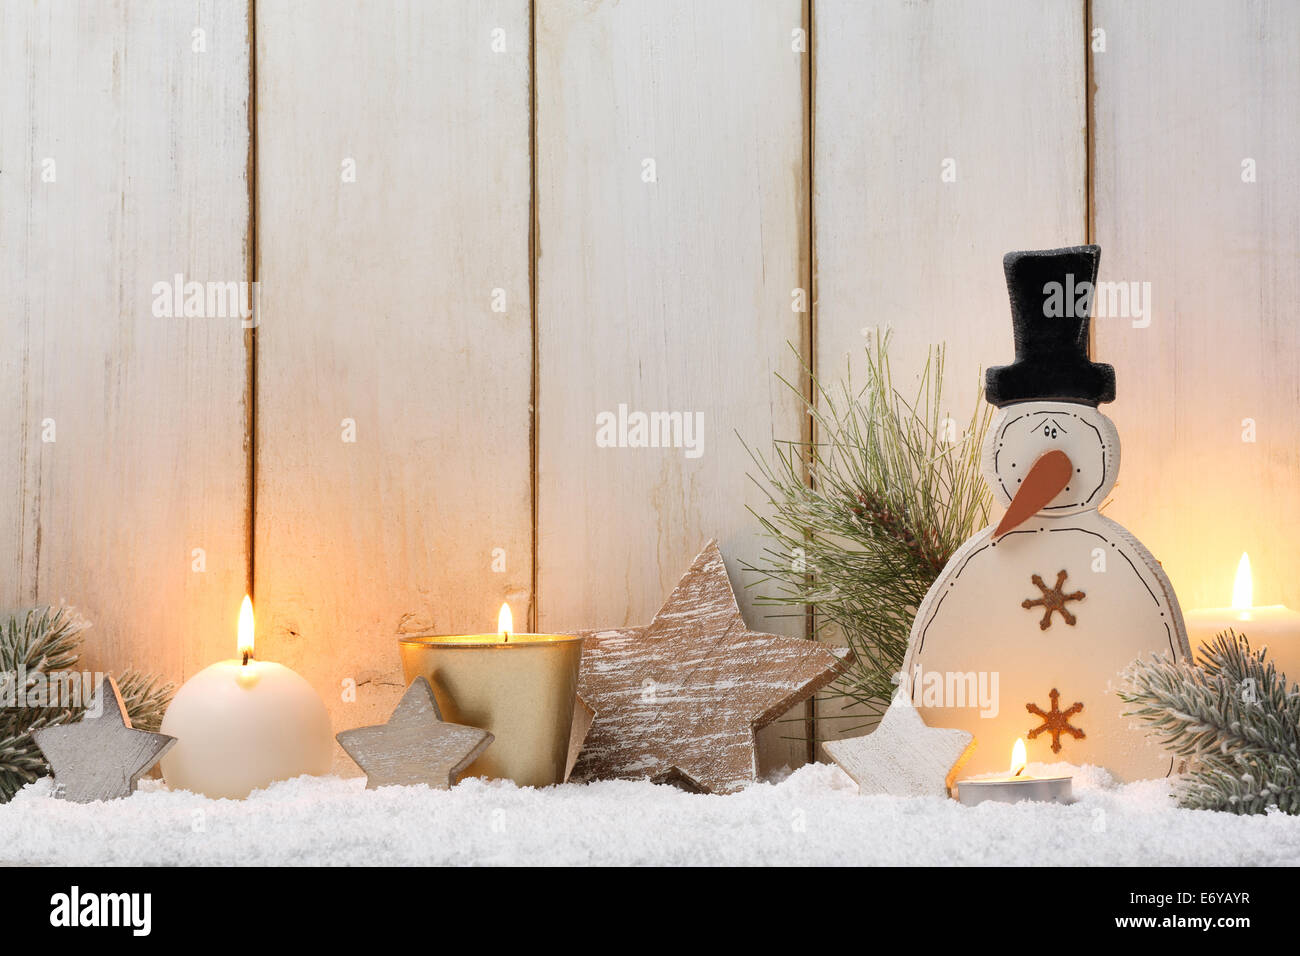 Décoration de Noël sur la planche en bois Banque D'Images